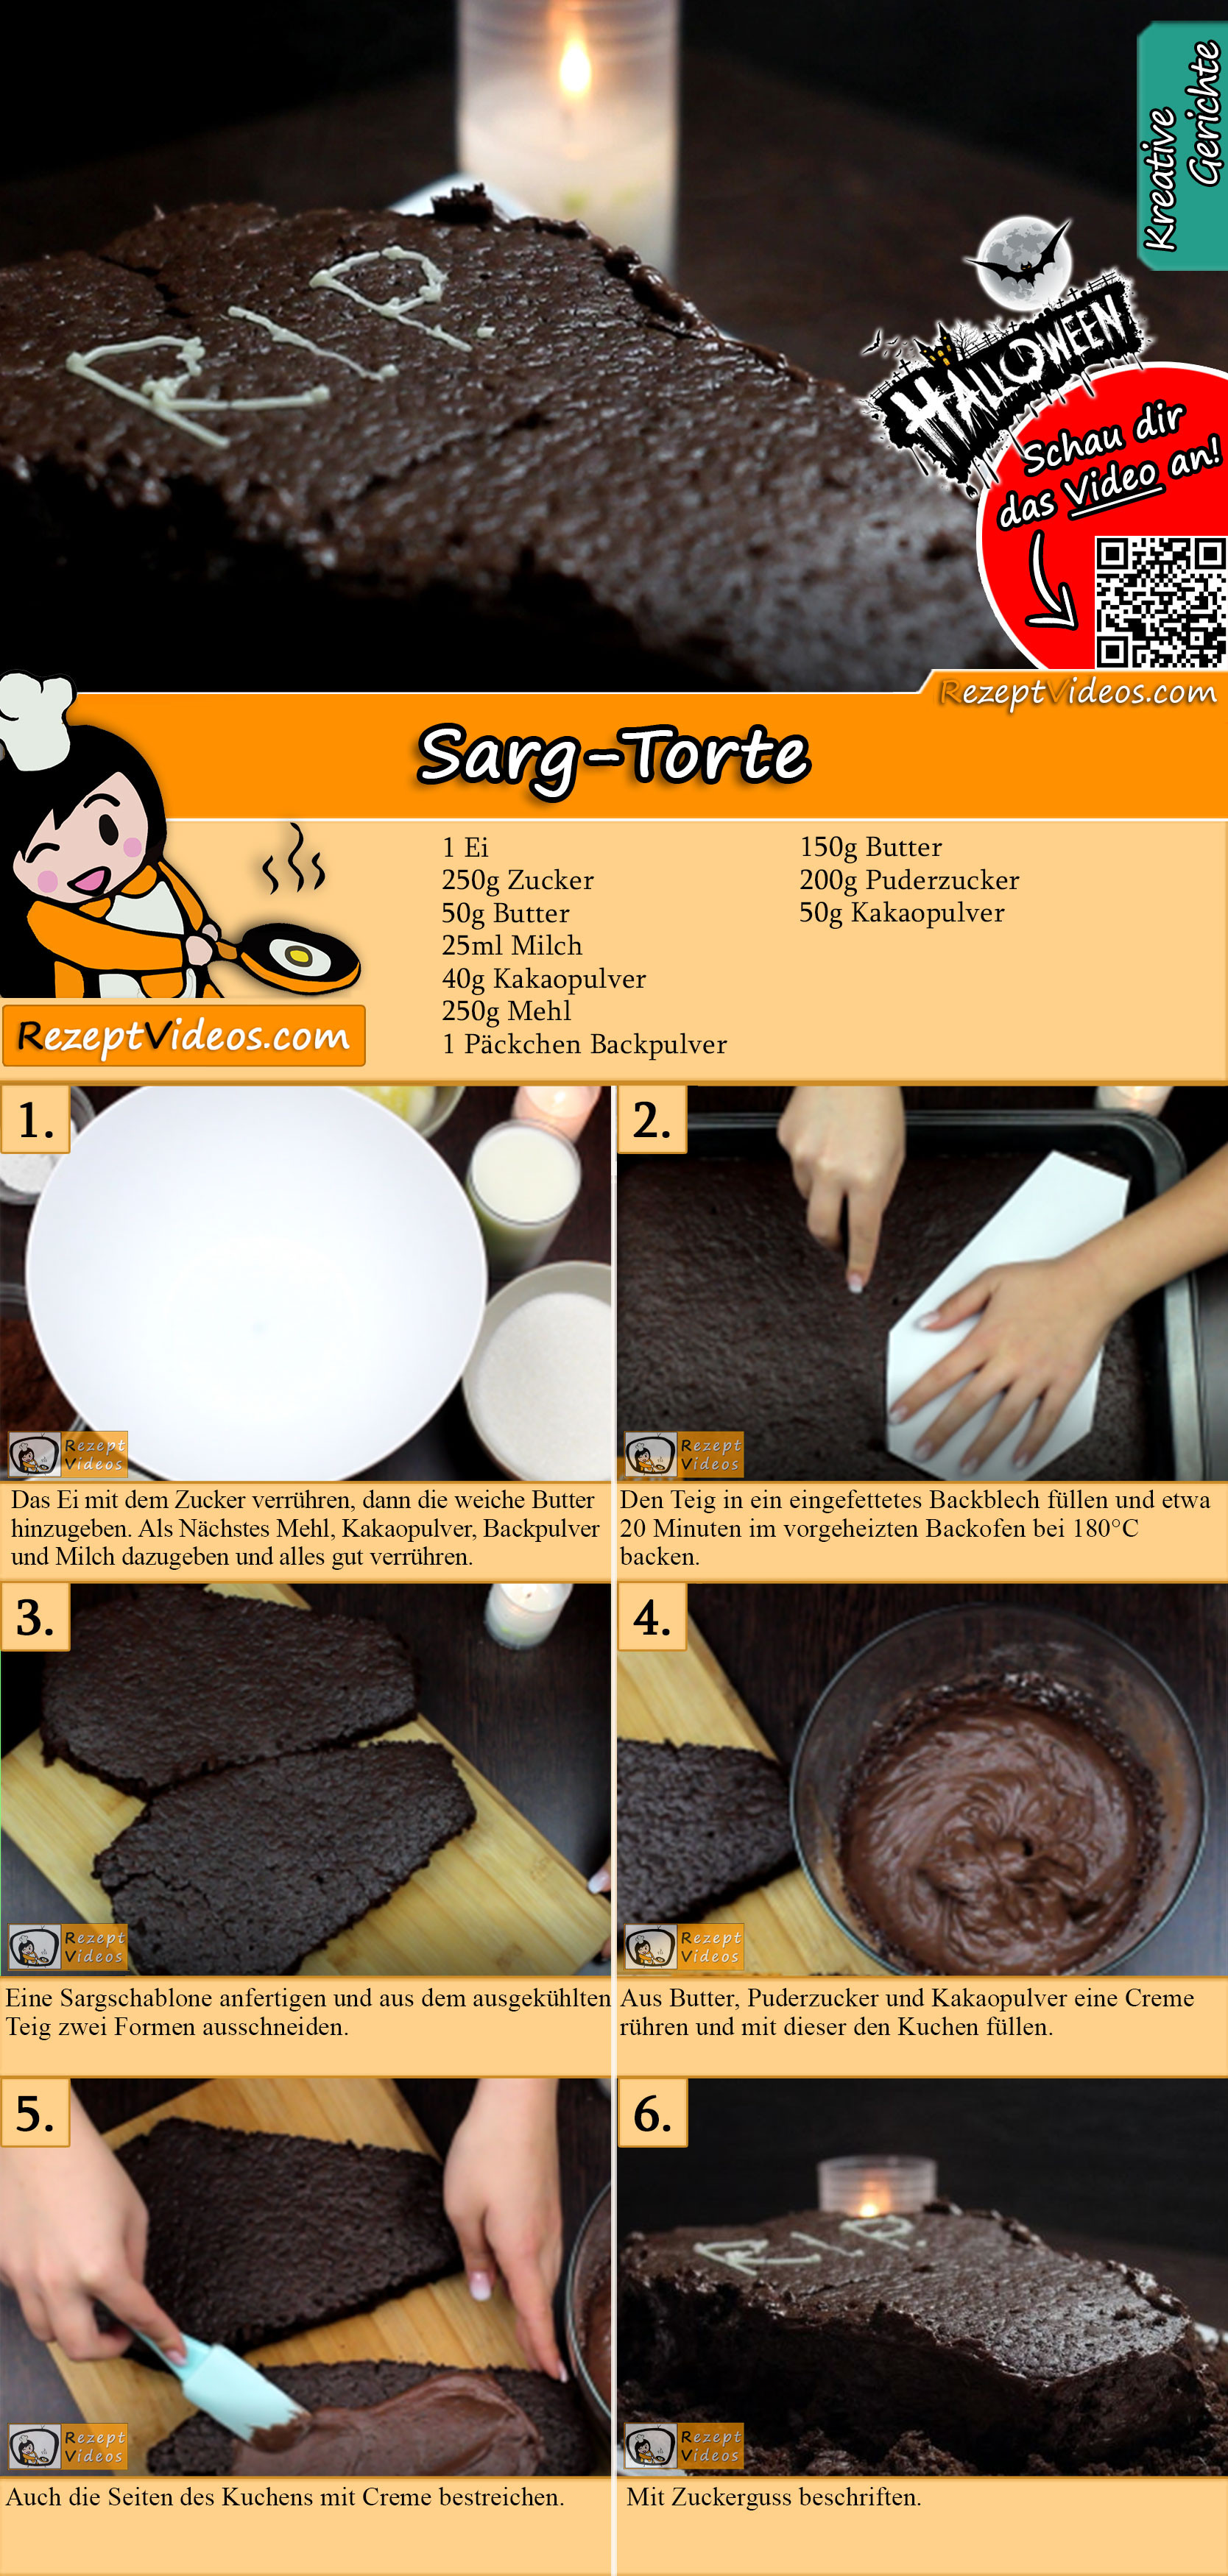 Sarg-Torte Rezept mit Video